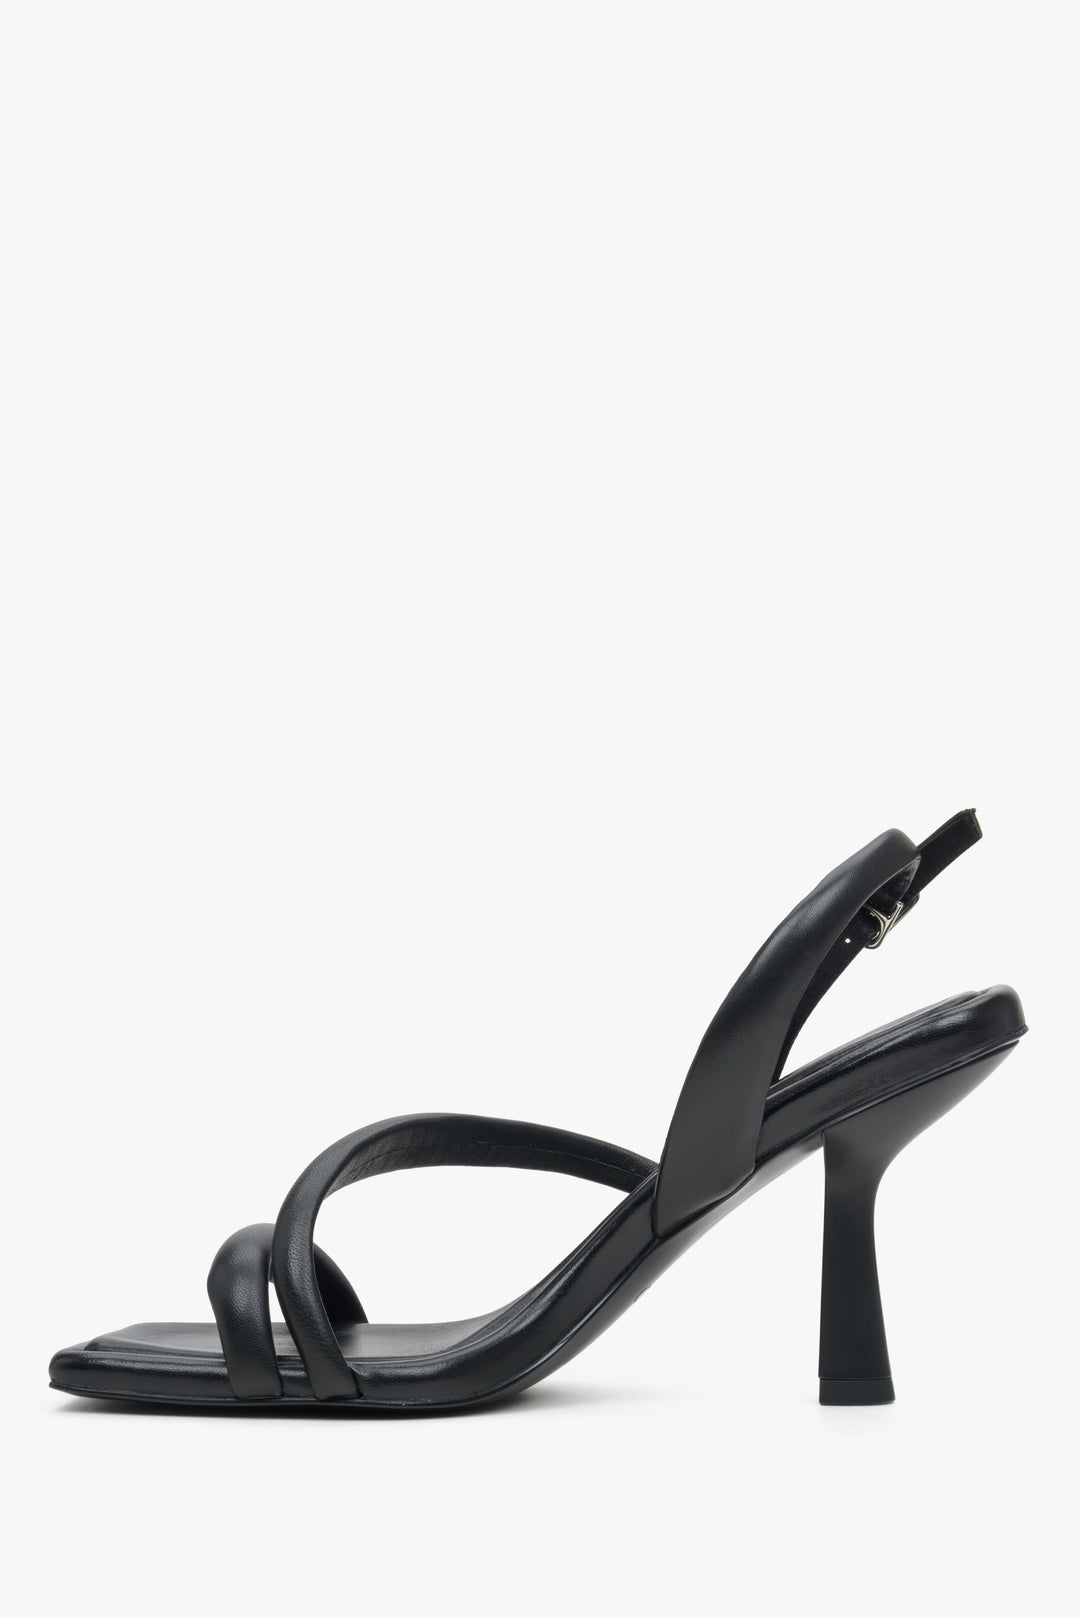 Czarne, skórzane sandały damskie Estro na lato - profil butów.